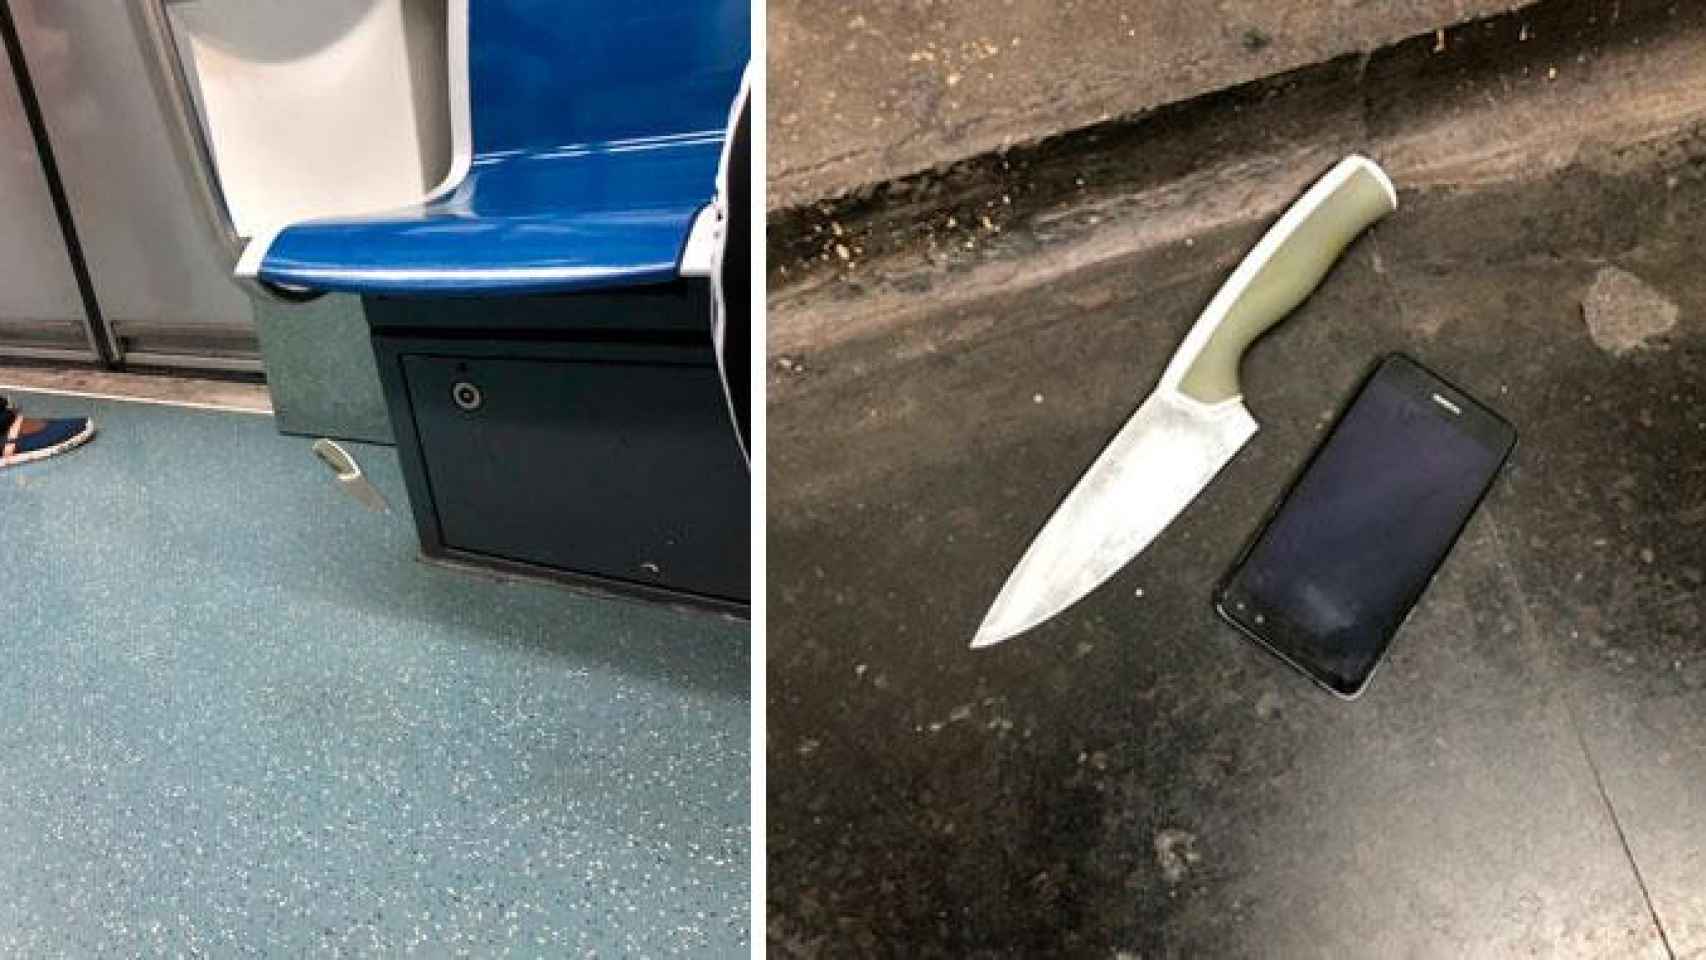 Imágenes del cuchillo que portaba el pasajero en el Metro de Barcelona / CG